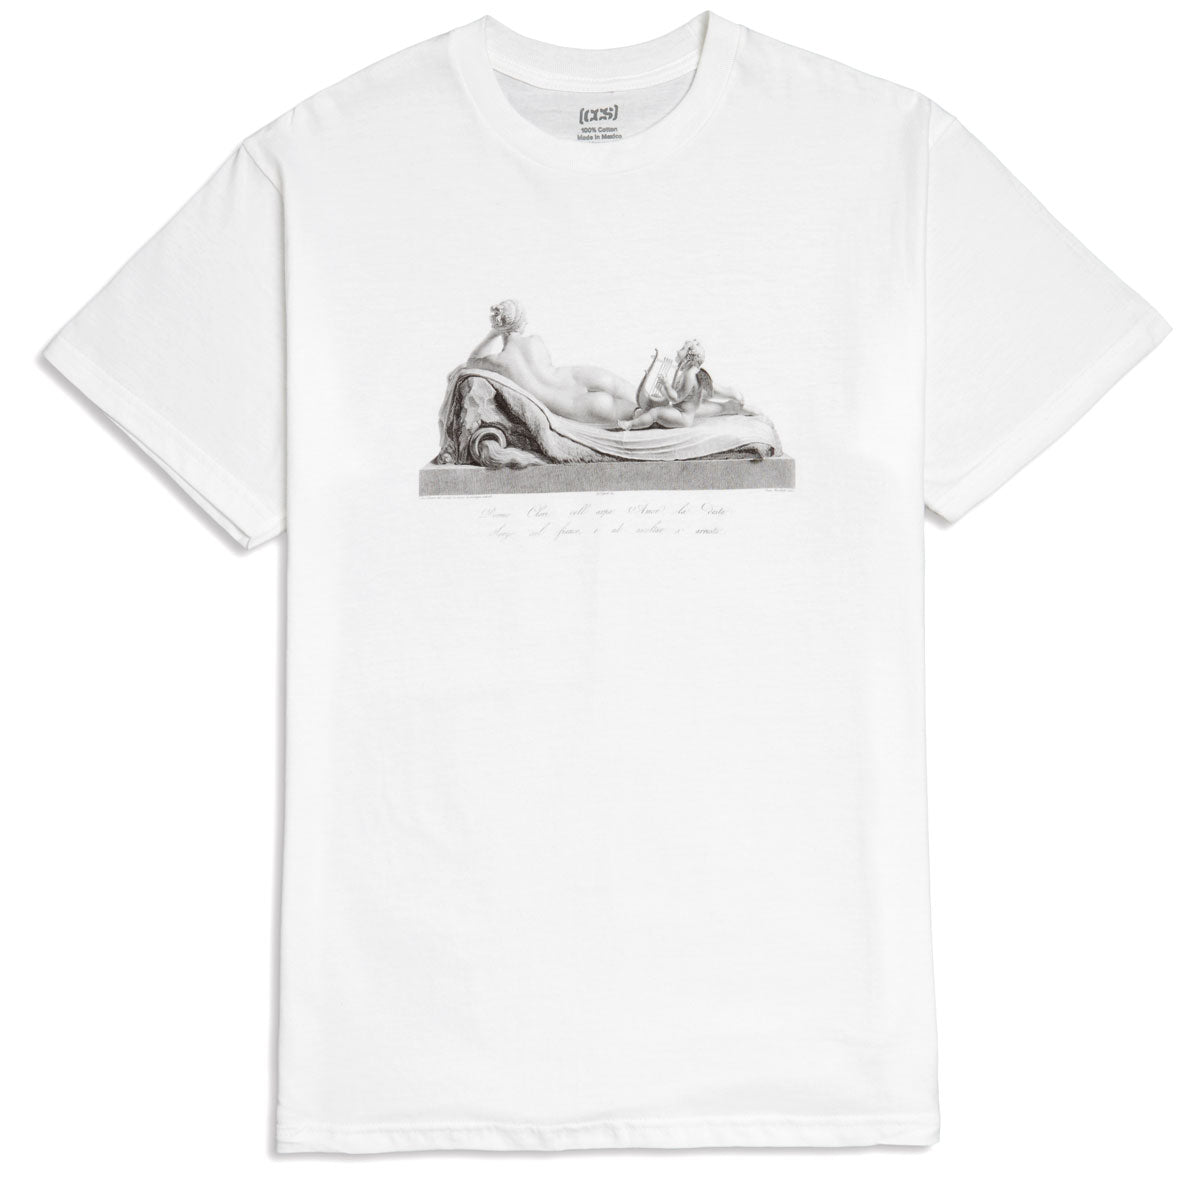 CCS Venus & Amor T-Shirt - White image 1